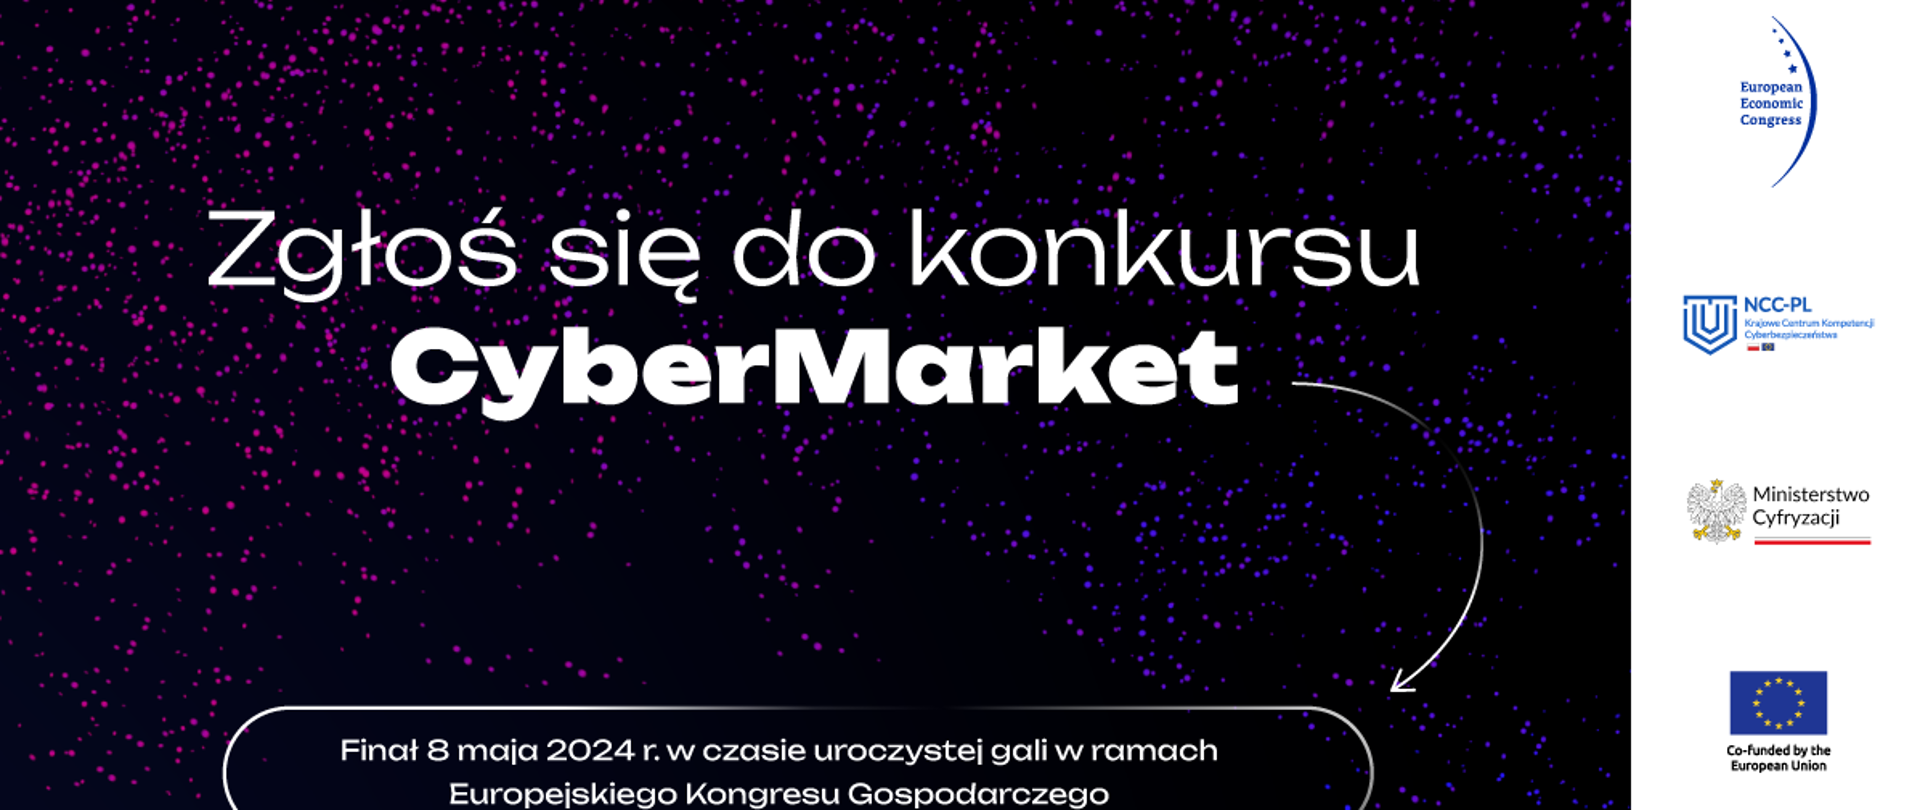 Zgłoś się do konkursu CyberMarket, Finał 8 maja 2024 w czasie uroczystej gali Europejskiego Kongresu Gospodarczego